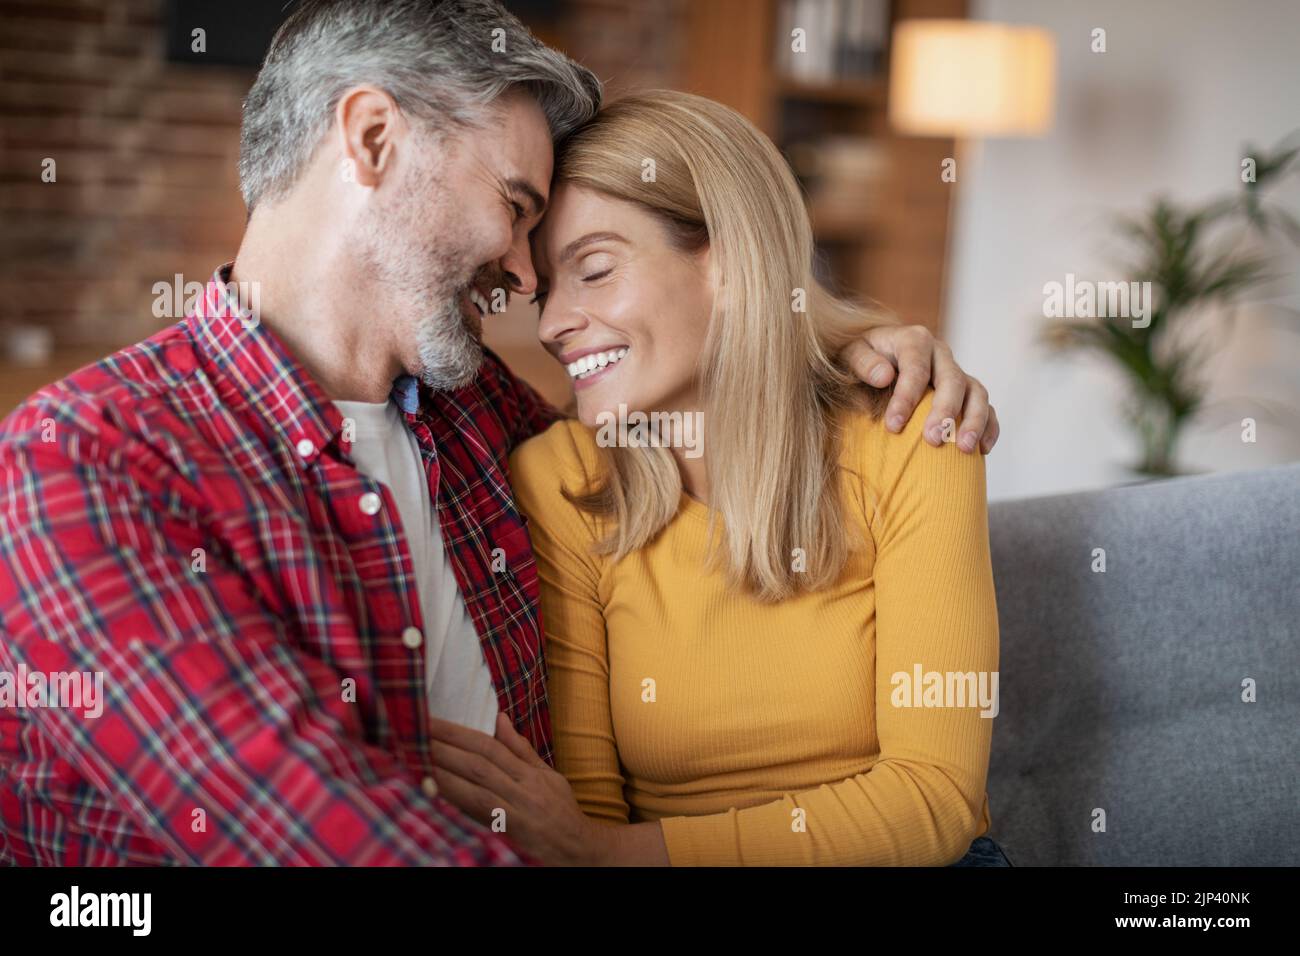 Allegro adulto europeo uomo e donna che abbracciano e godono di tenero momento e tempo libero, seduti insieme Foto Stock